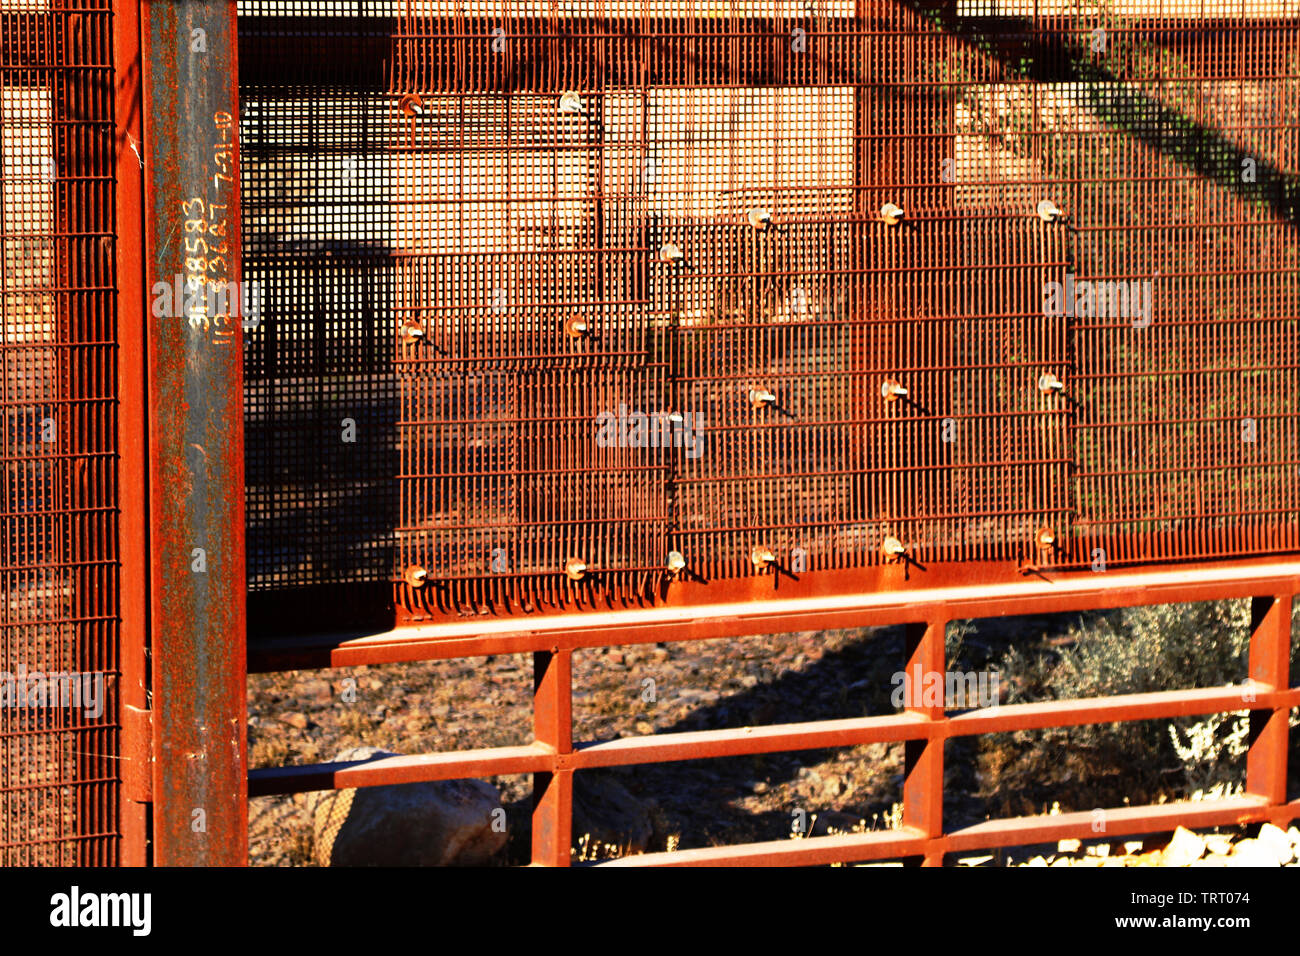 Un controllo di qualità (QA) specialista con la Task Force barriera ha visitato una porzione del settore di Tucson per effettuare ricognizione della barriera esistente Giugno 8, 2019. Il QA ha rilevato la presenza di inondazione di cancelli, porte di accesso, condizioni difficili, le aree in cui la barriera è stata tagliata e riparato, e pendenze ripide, rendendo alcune zone difficili da raggiungere. Foto Stock